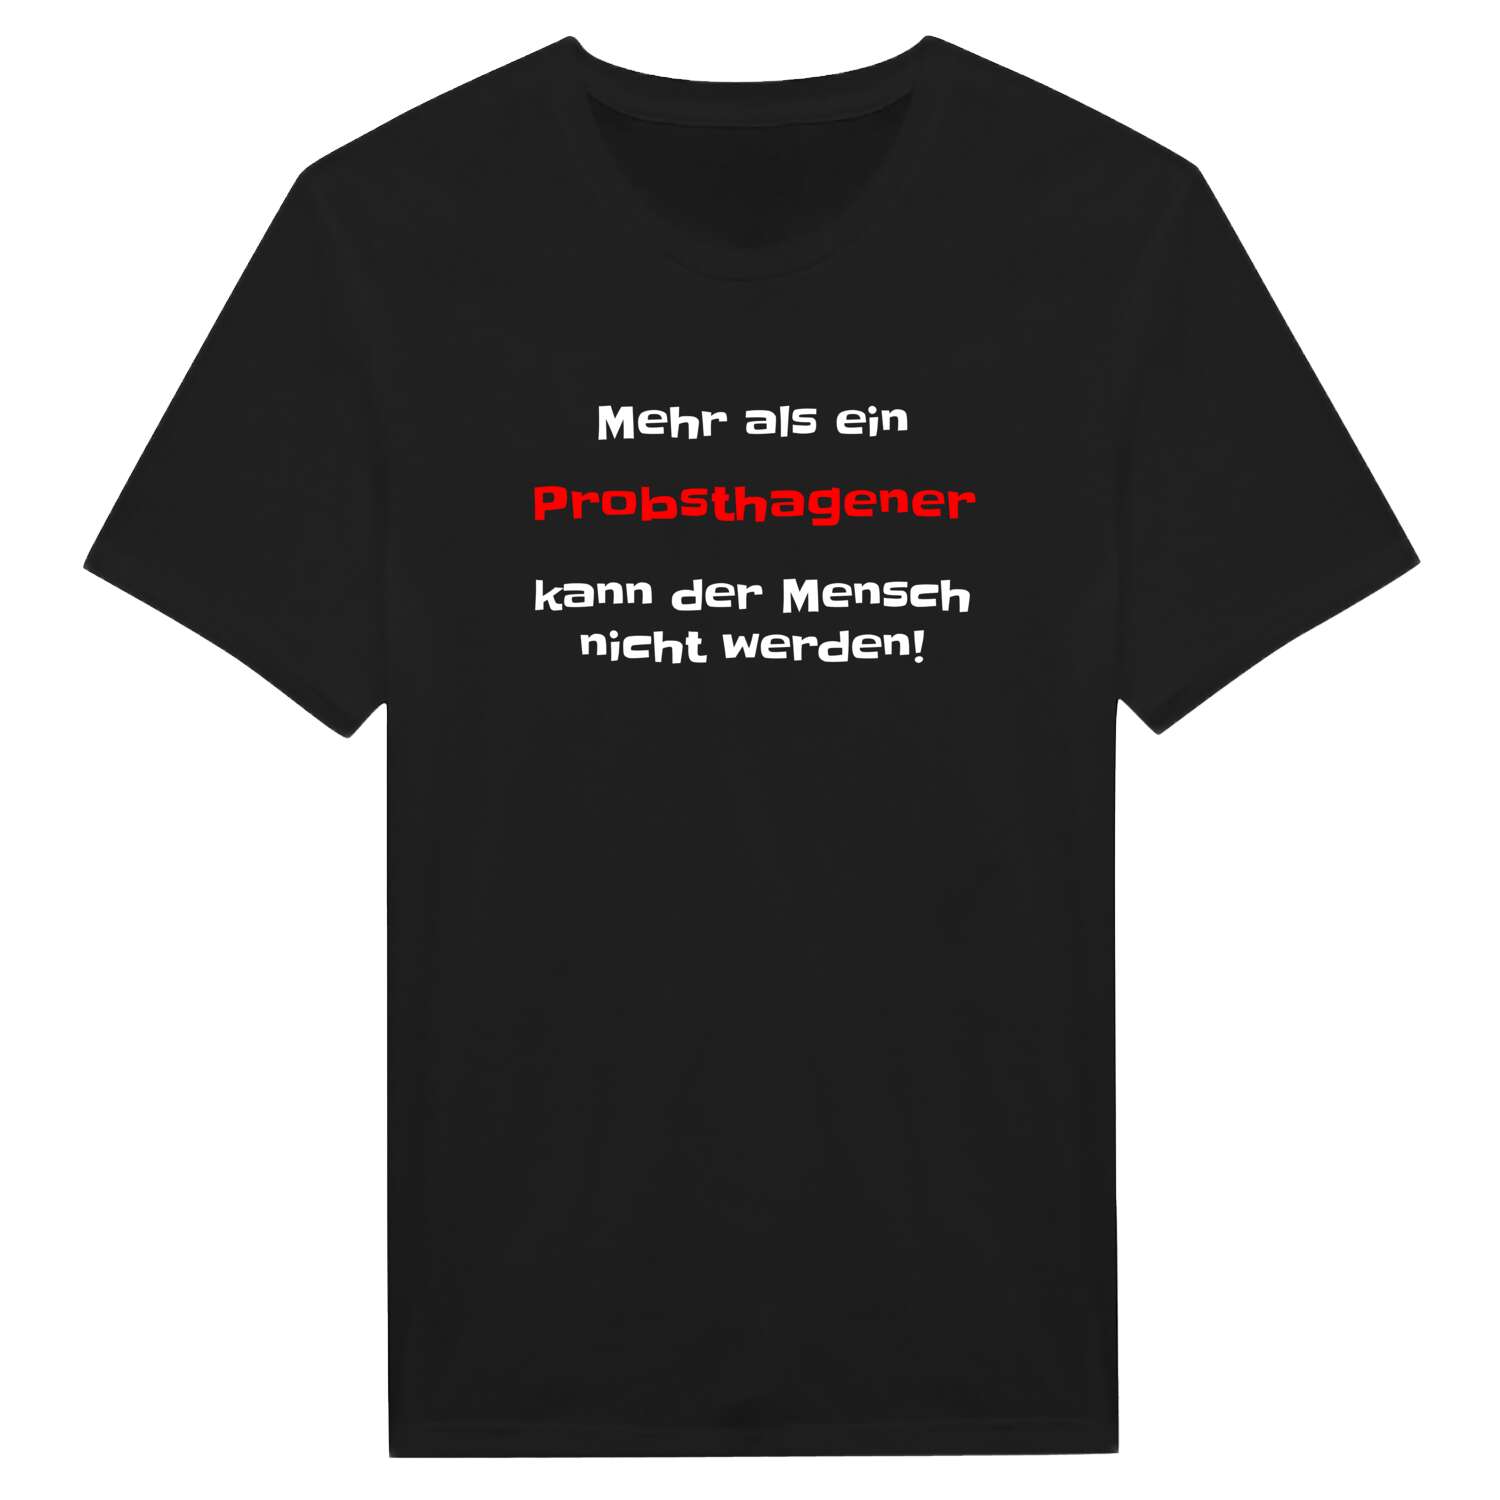 Probsthagen T-Shirt »Mehr als ein«